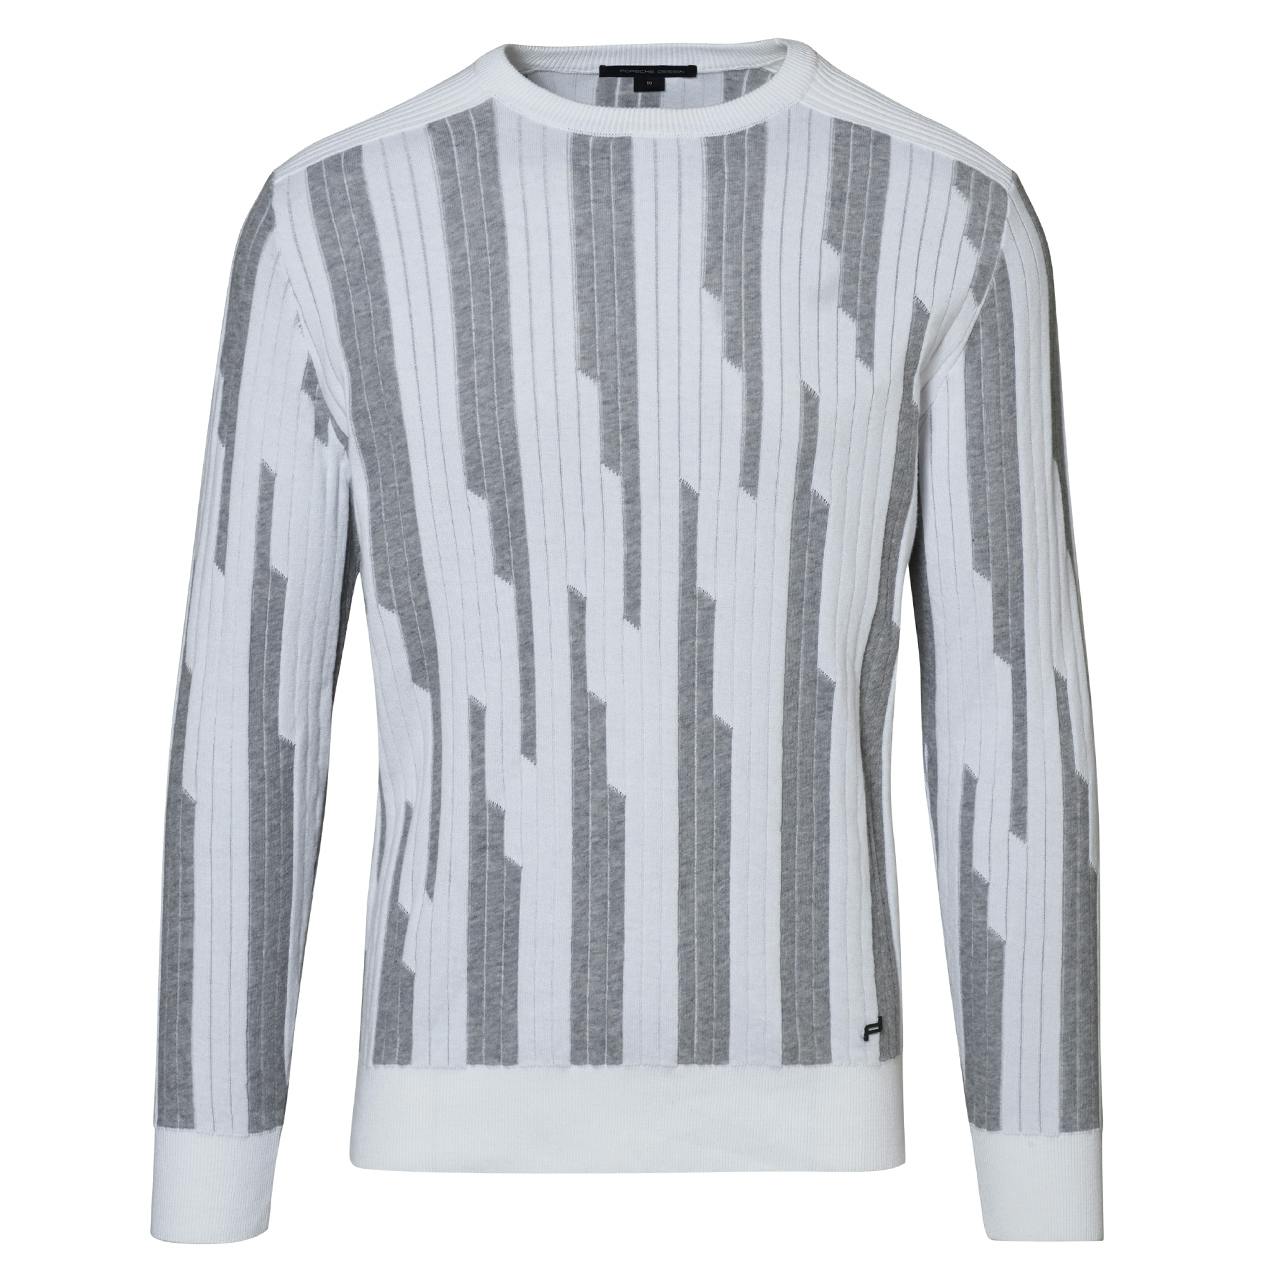 Porsche Design_SS20_M Halogen Structured Sweater, light grey, 345€